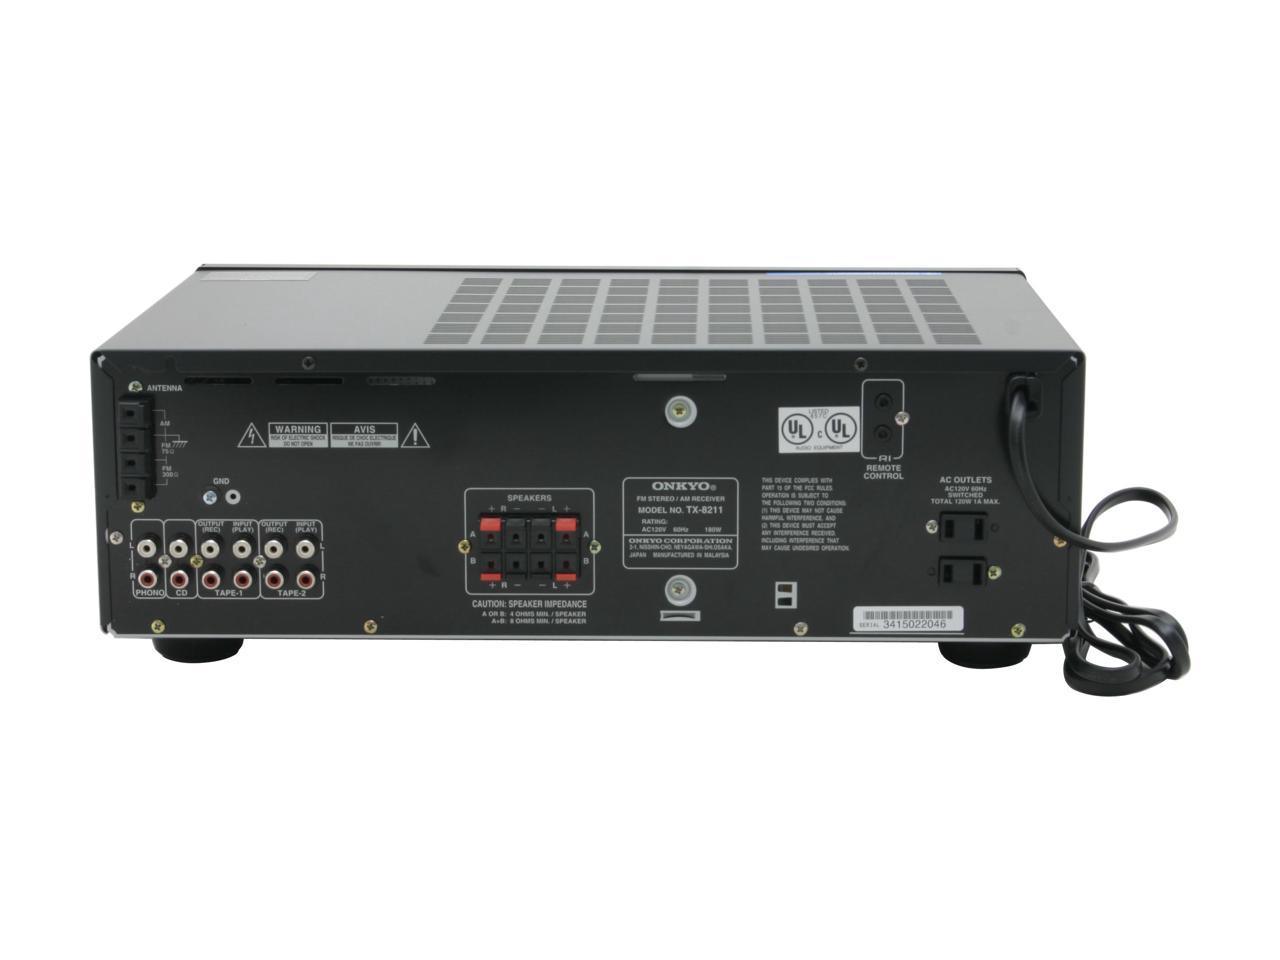 ONKYO TX-8211 Stereo Hi-Fi Receiver - Newegg.com